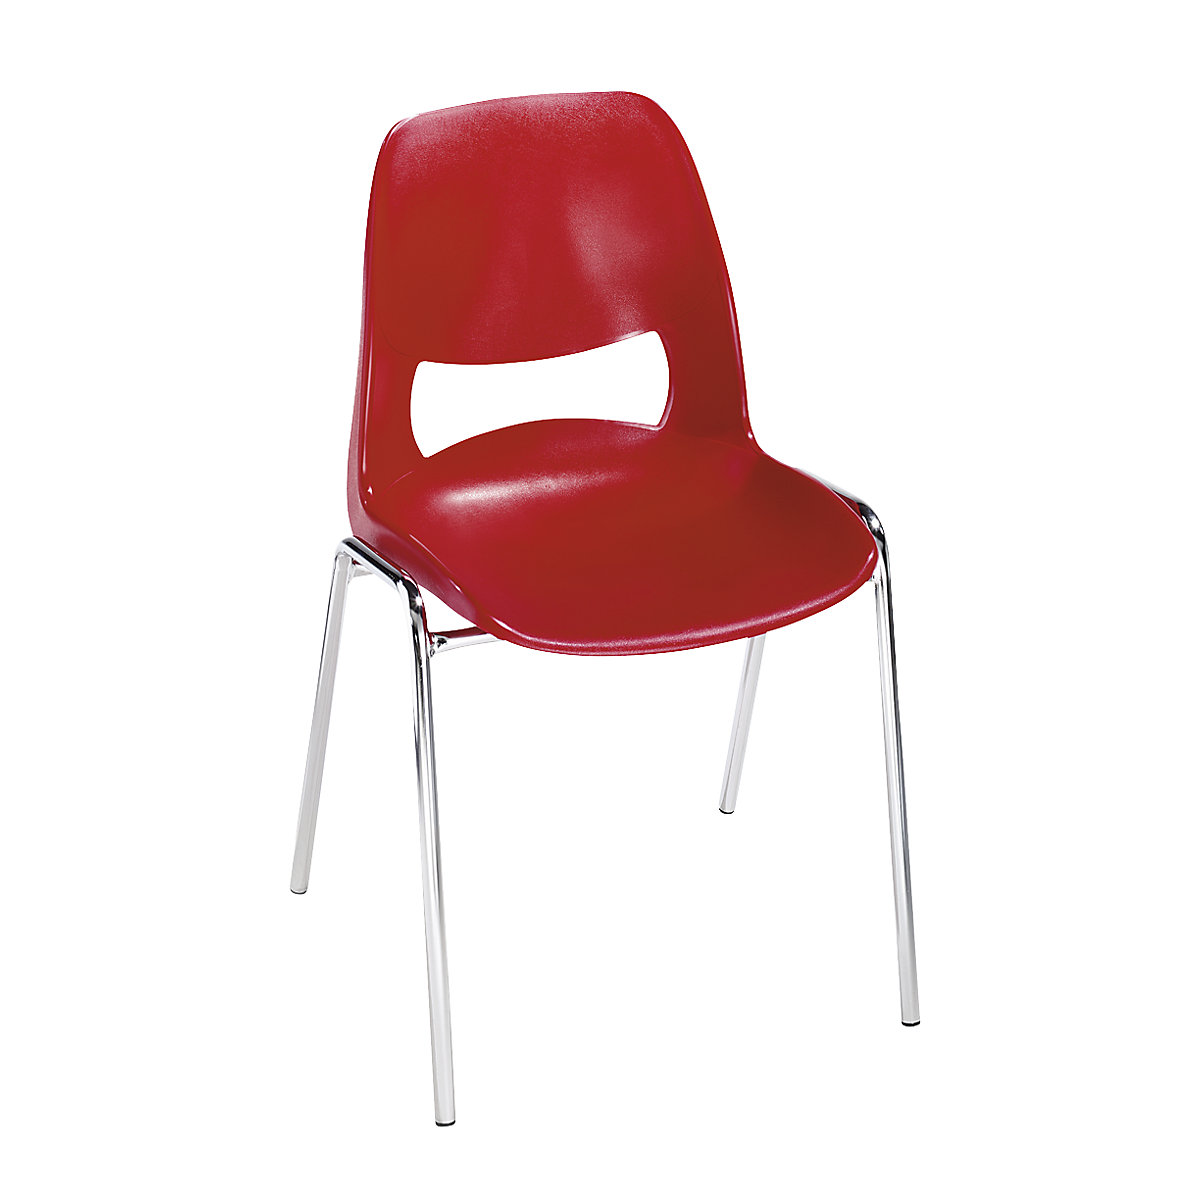 Chaise à coque en polypropylène, sans rembourrage, rouge, lot de 2-8